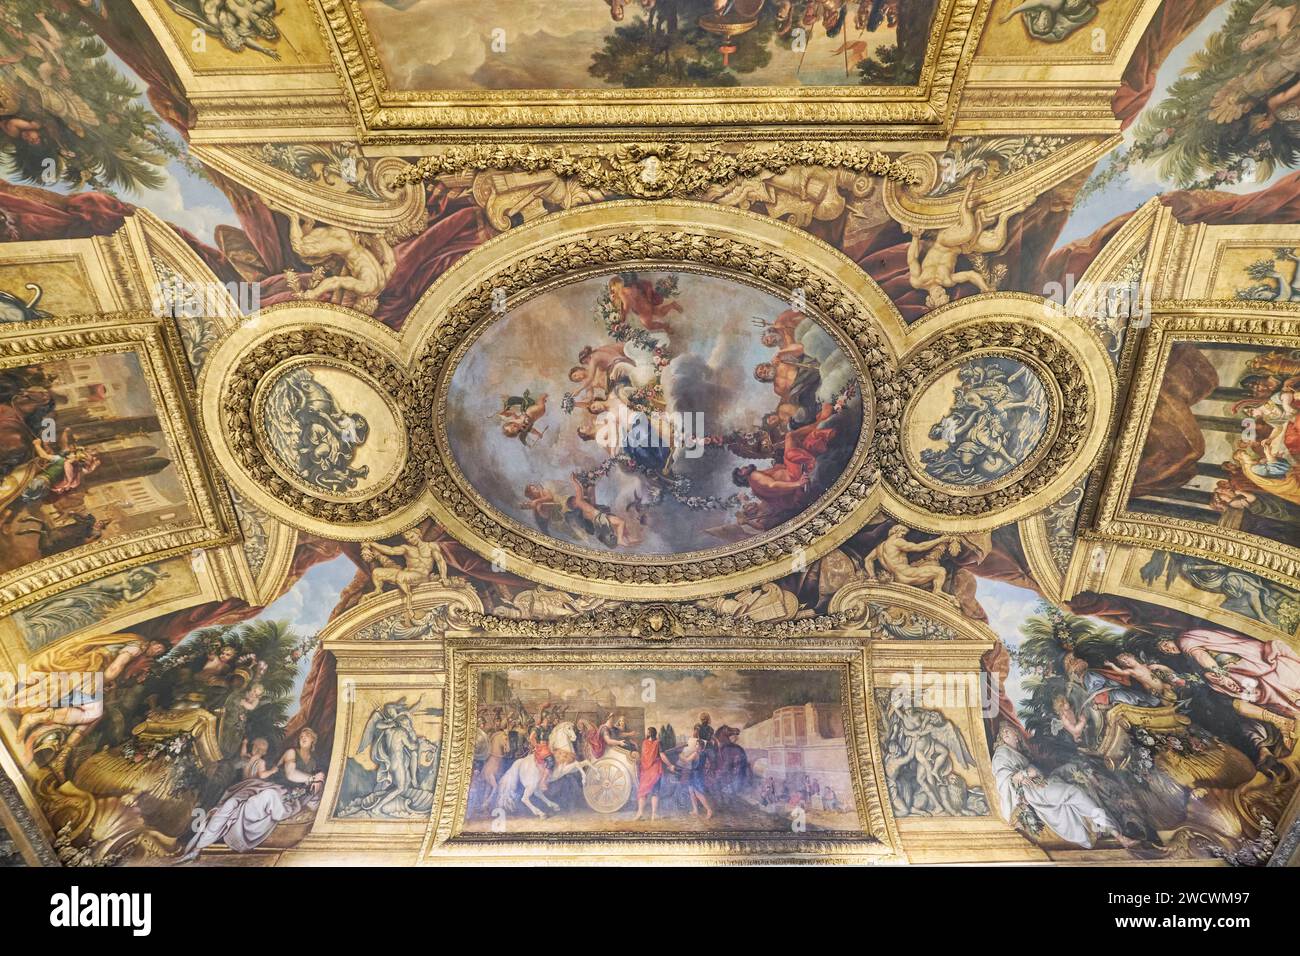 Frankreich, Yvelines, Versailles, Schloss von Versailles, das von der UNESCO zum Weltkulturerbe erklärt wurde, der Venus-Raum, zentrale Decke: Venus, die die Götter und Mächte ihrem Reich unterwirft Stockfoto